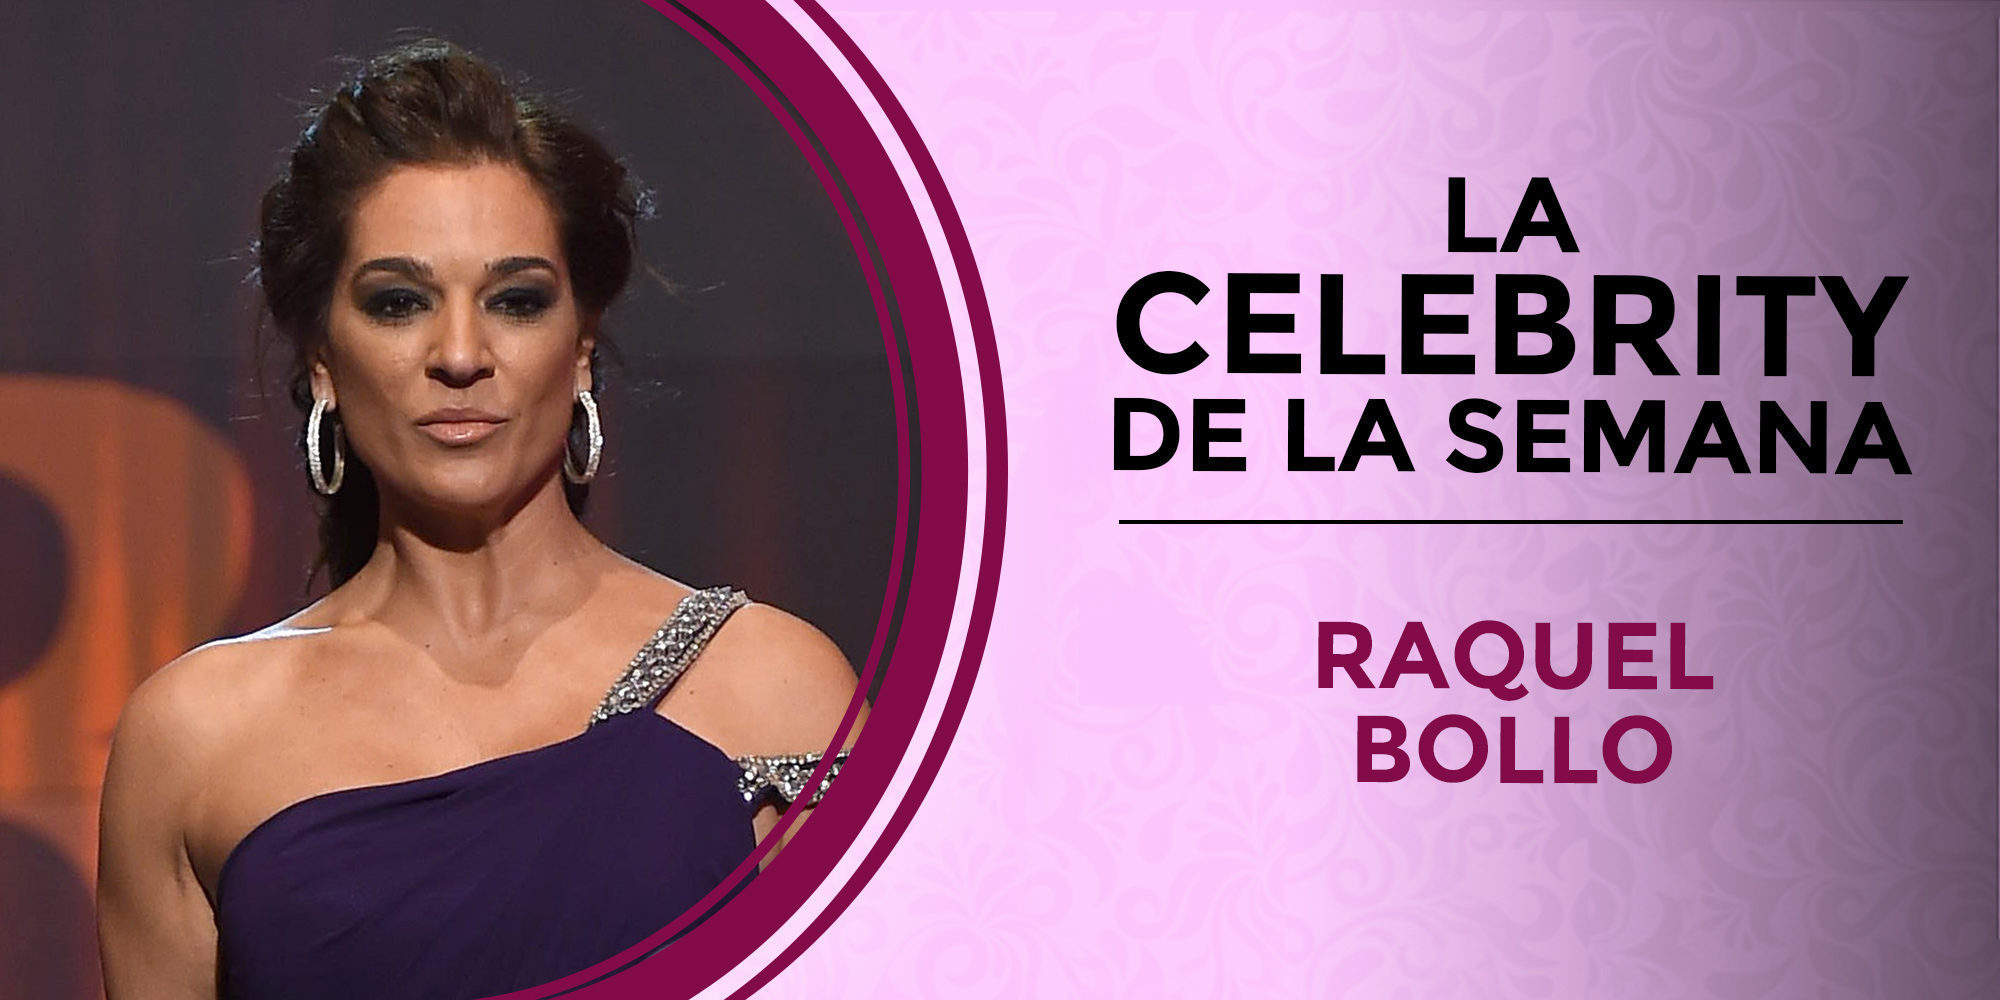 Raquel Bollo se convierte en la celebrity de la semana tras anunciar que deja la televisión